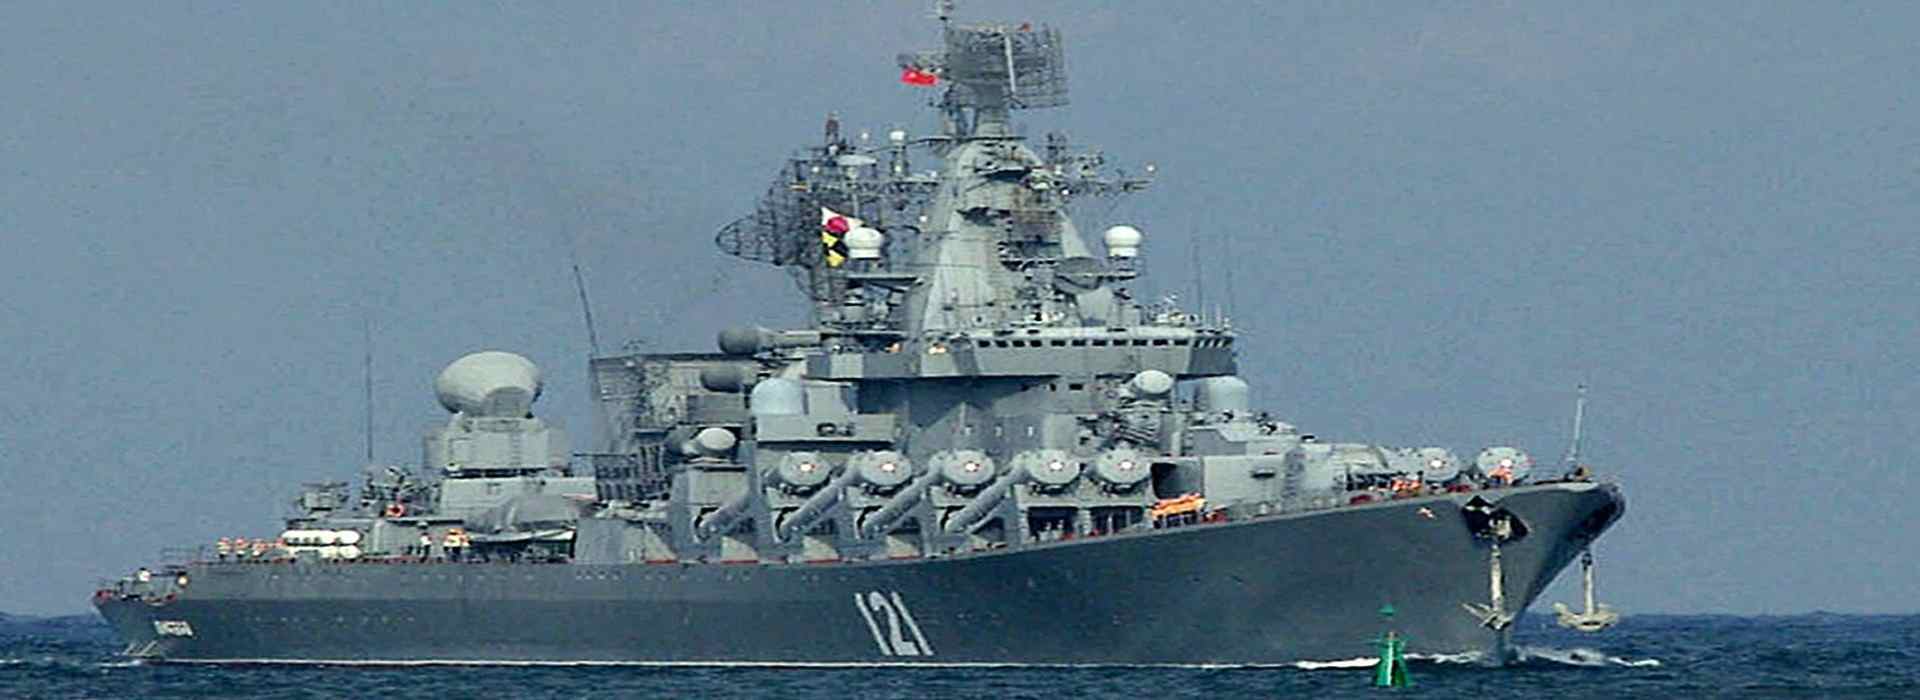 Moskva, l'incrociatore russo affondato che cambierà le sorti della guerra